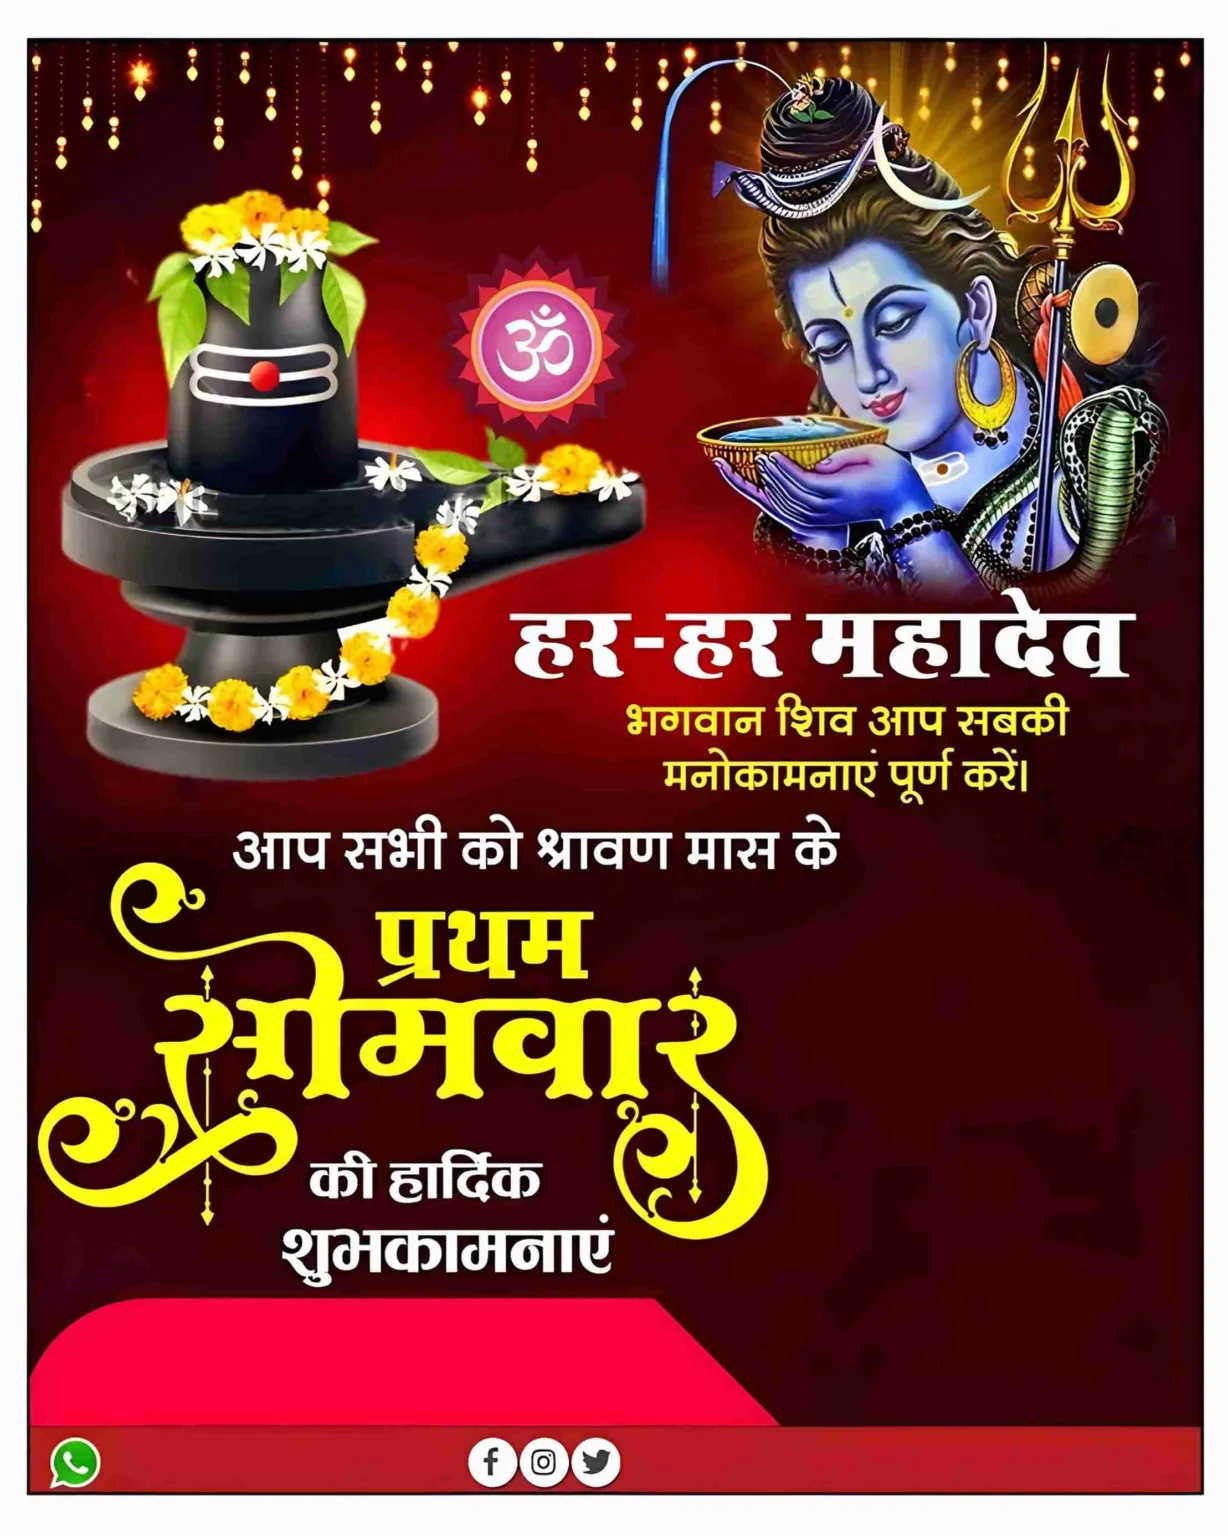 Maha Shivratri wishes poster in hindi